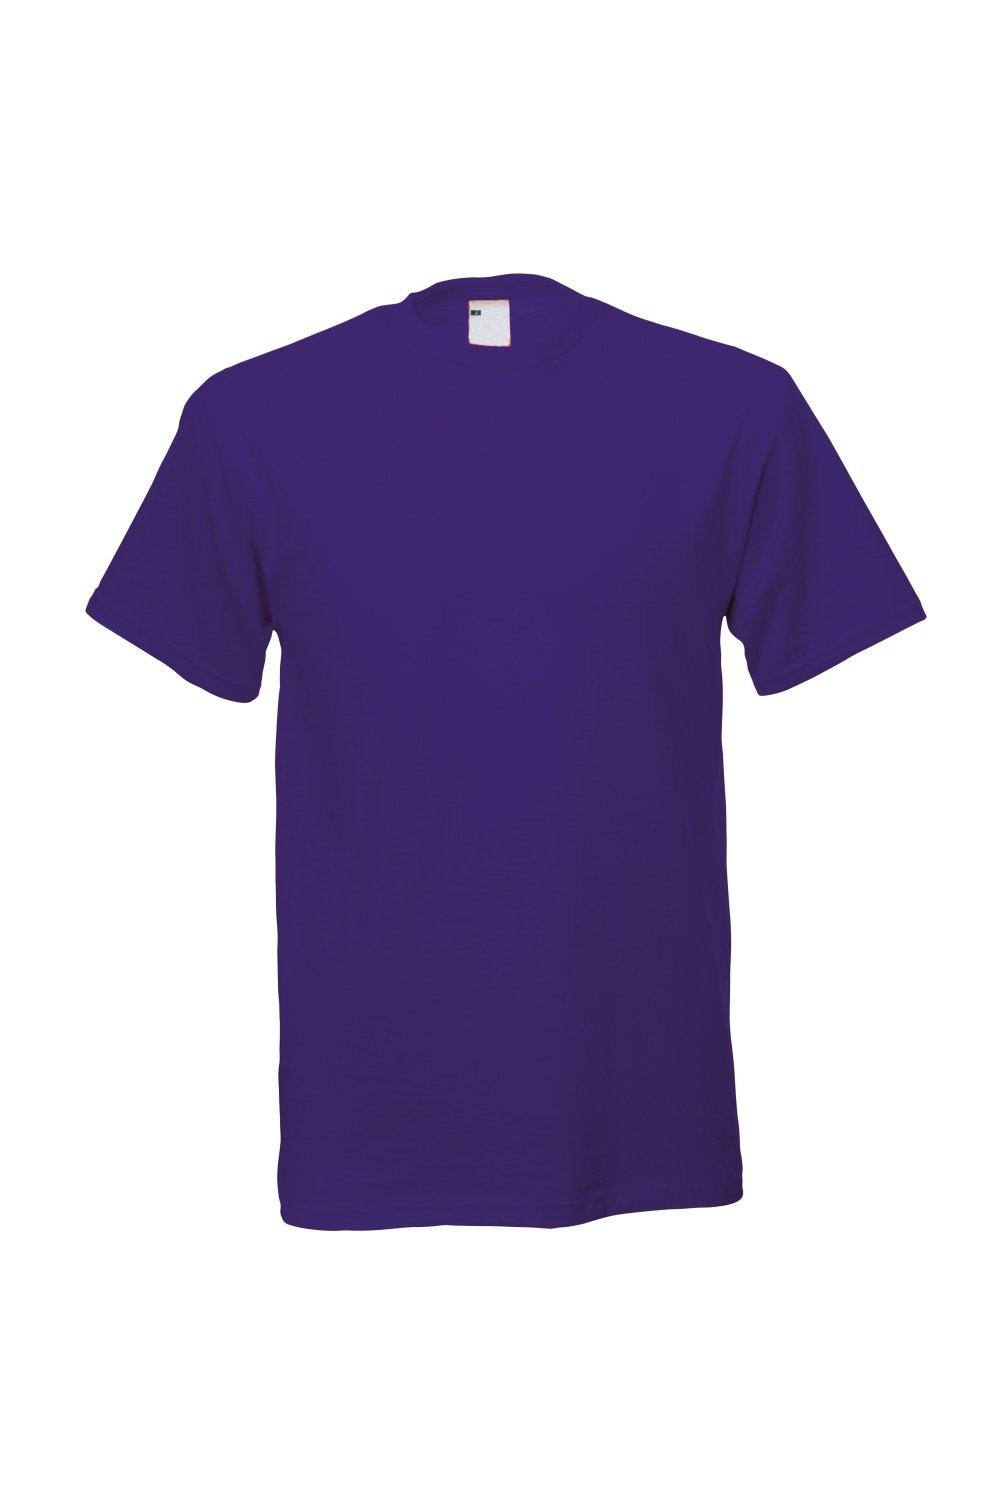 Повседневная футболка с коротким рукавом Universal Textiles, фиолетовый мужская футболка йога 2xl серый меланж